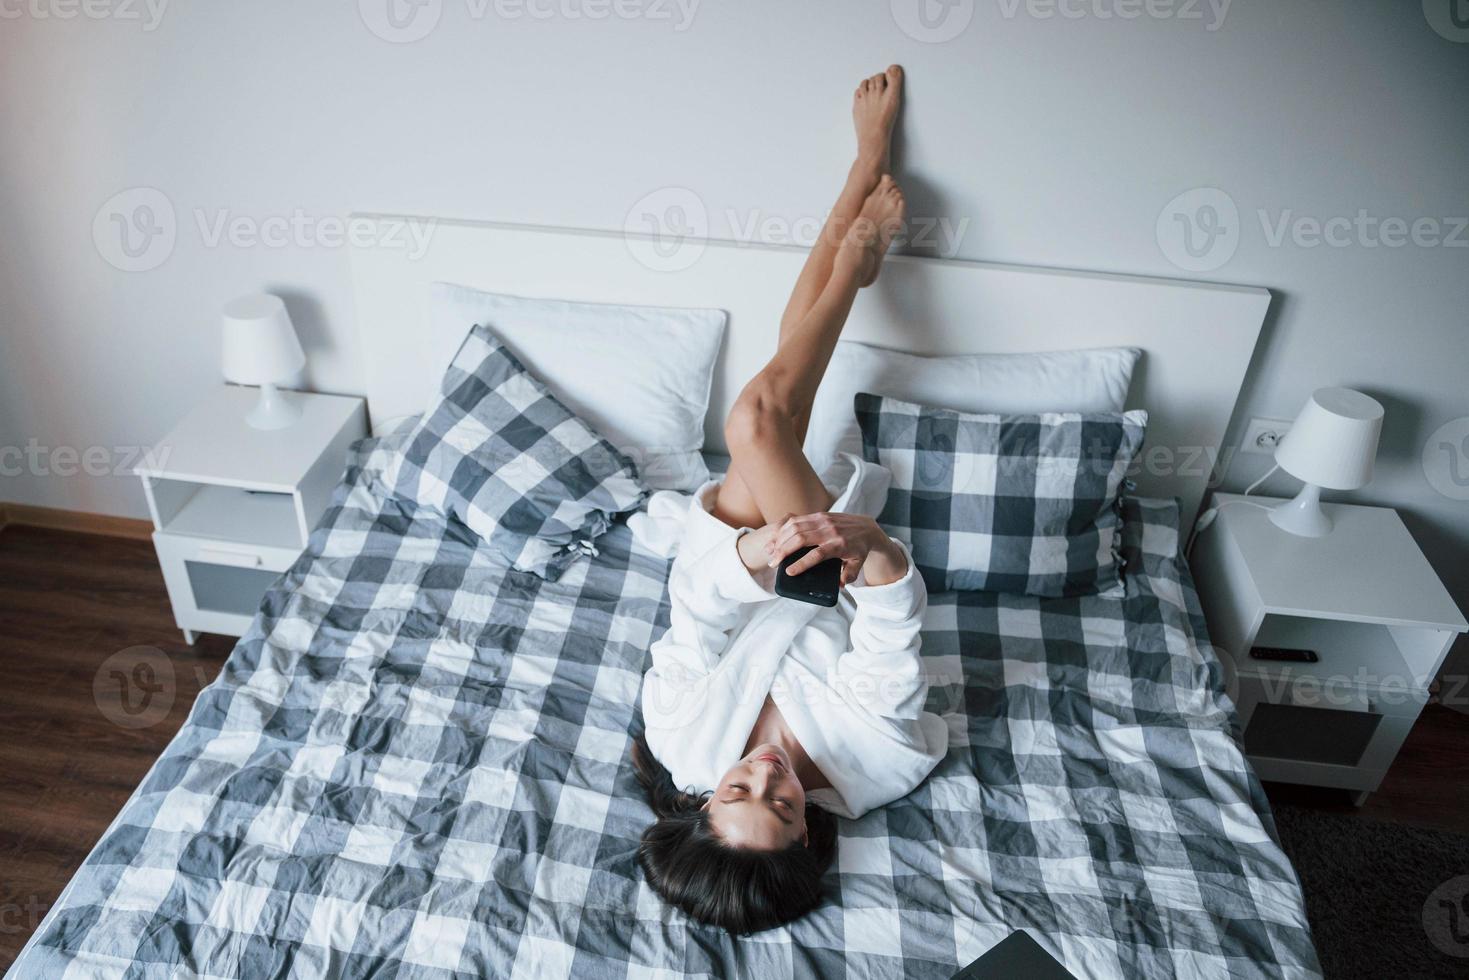 día de pereza. bella chica con túnica blanca acostada en la cama a la mañana y usando un smartphone foto